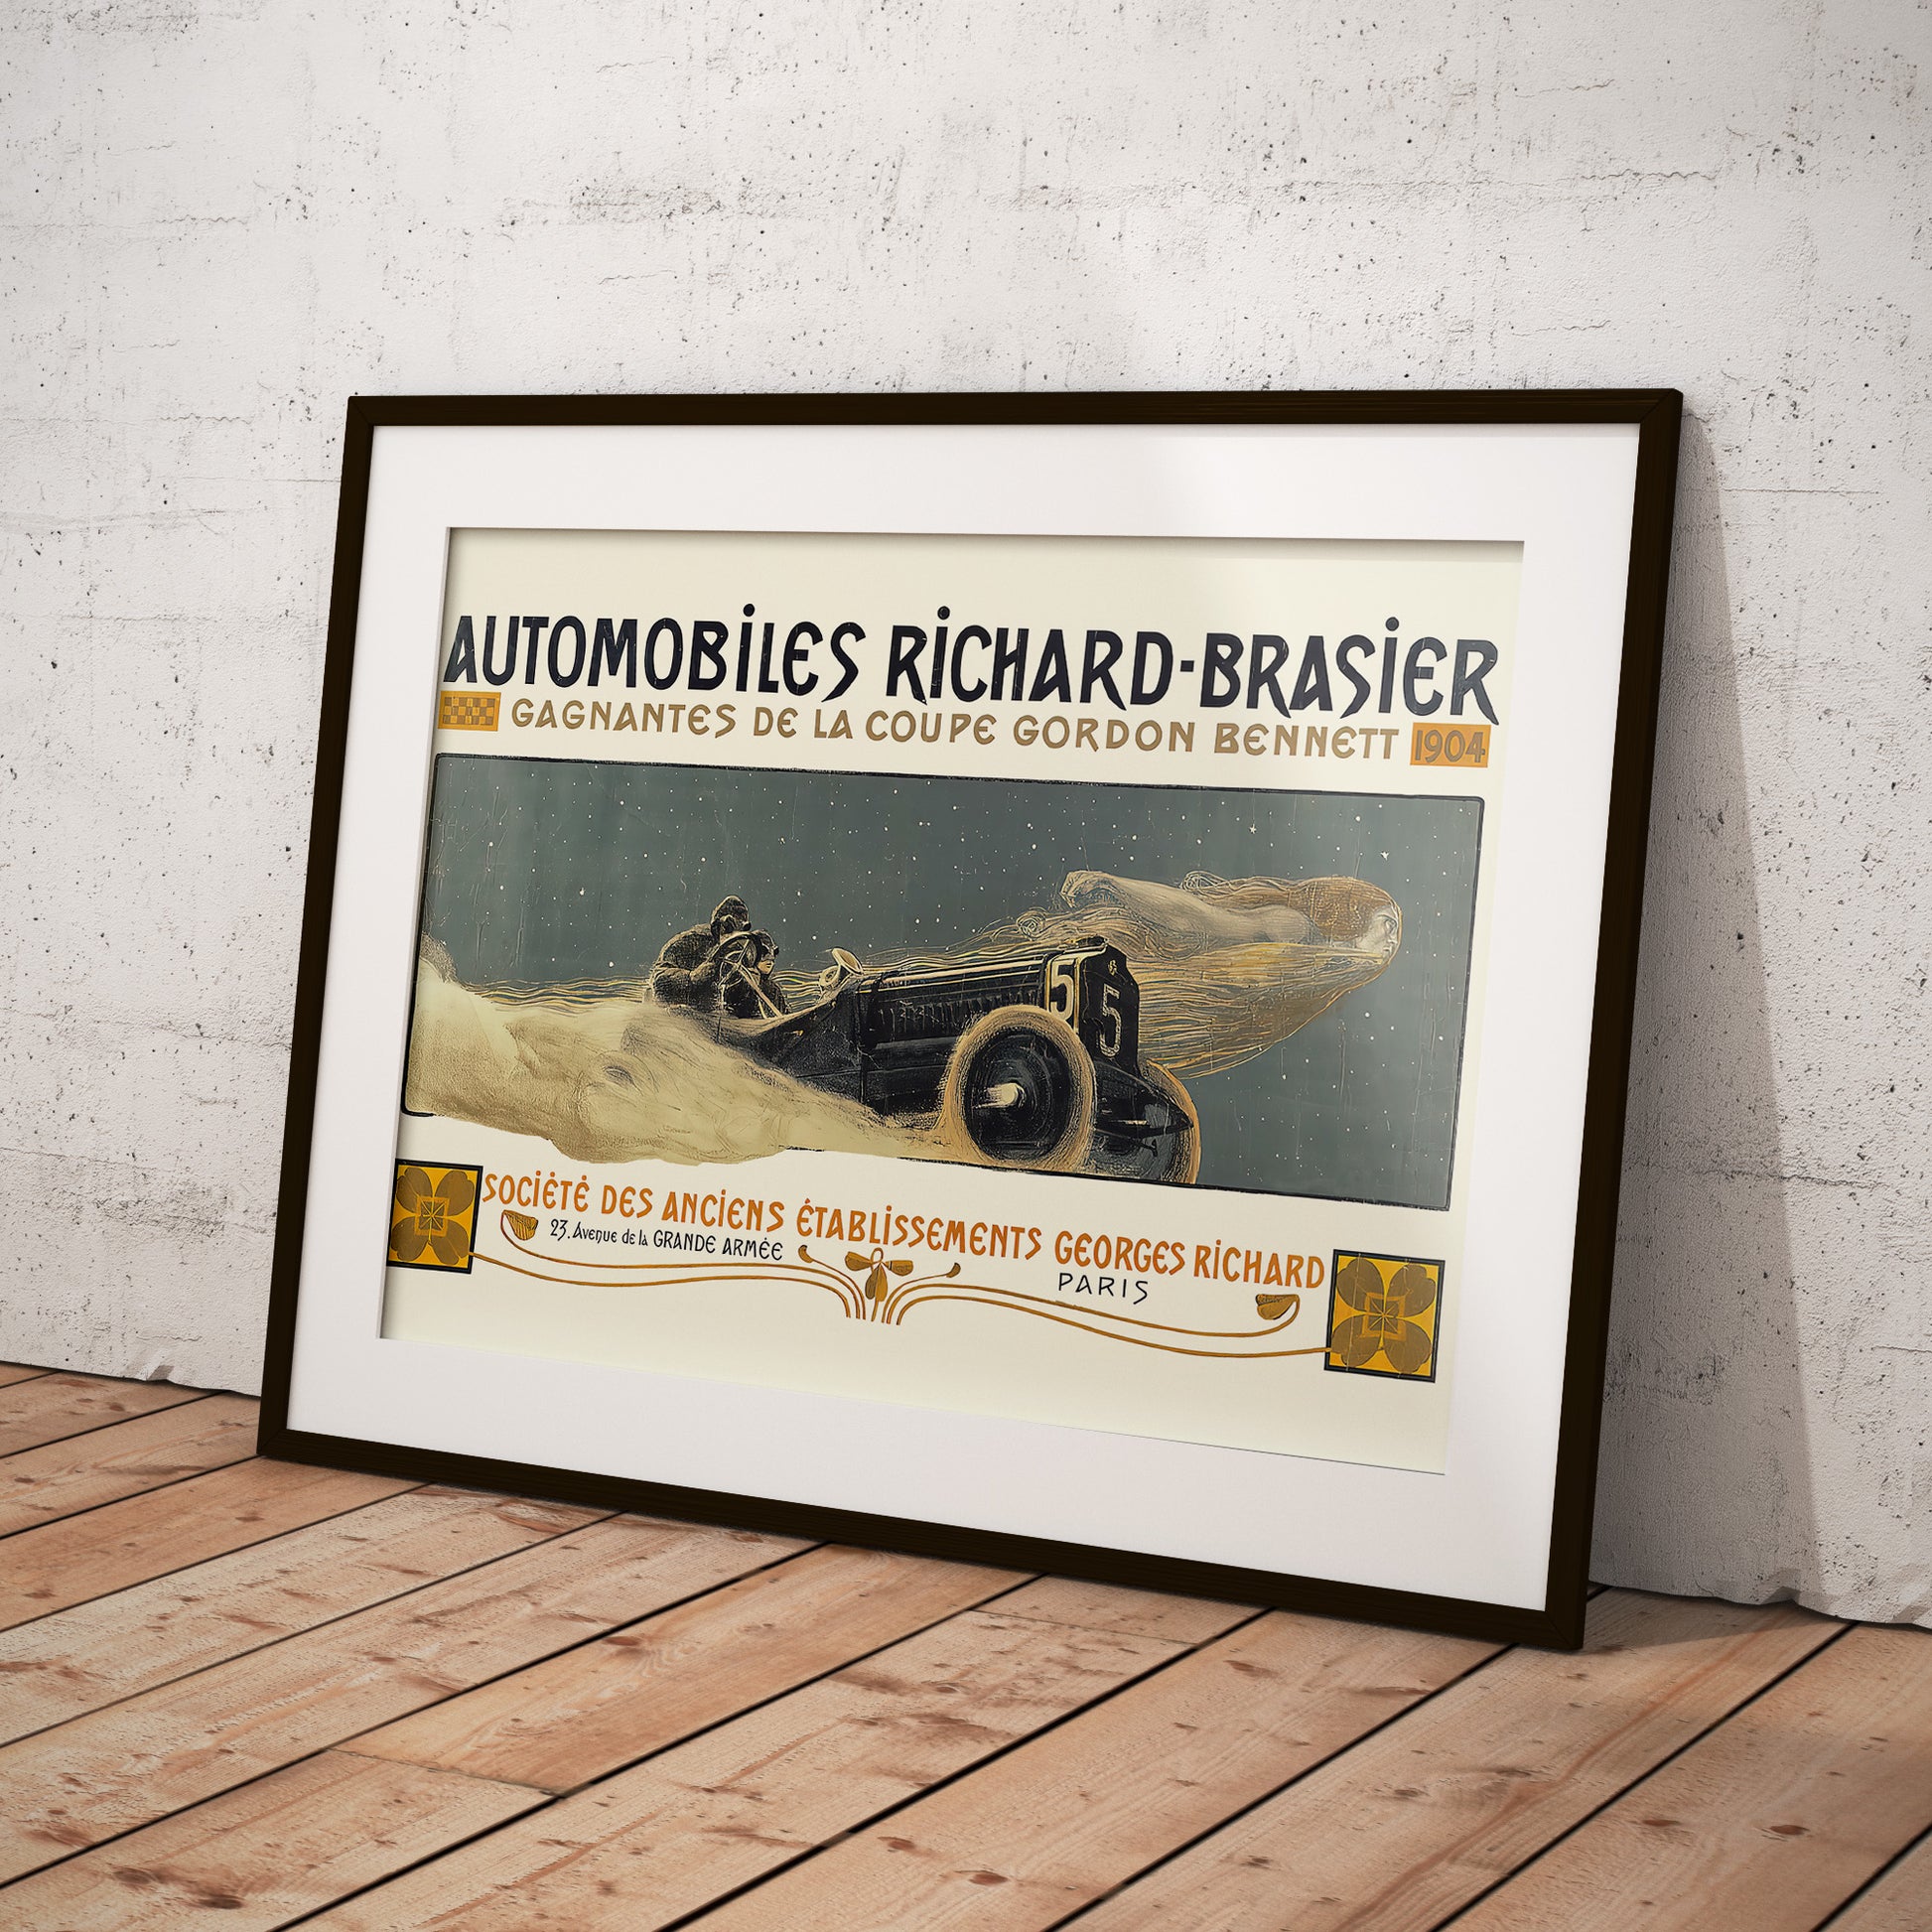 Automobiles Richard-Brasier - classic car advertising – Plakatsmeden